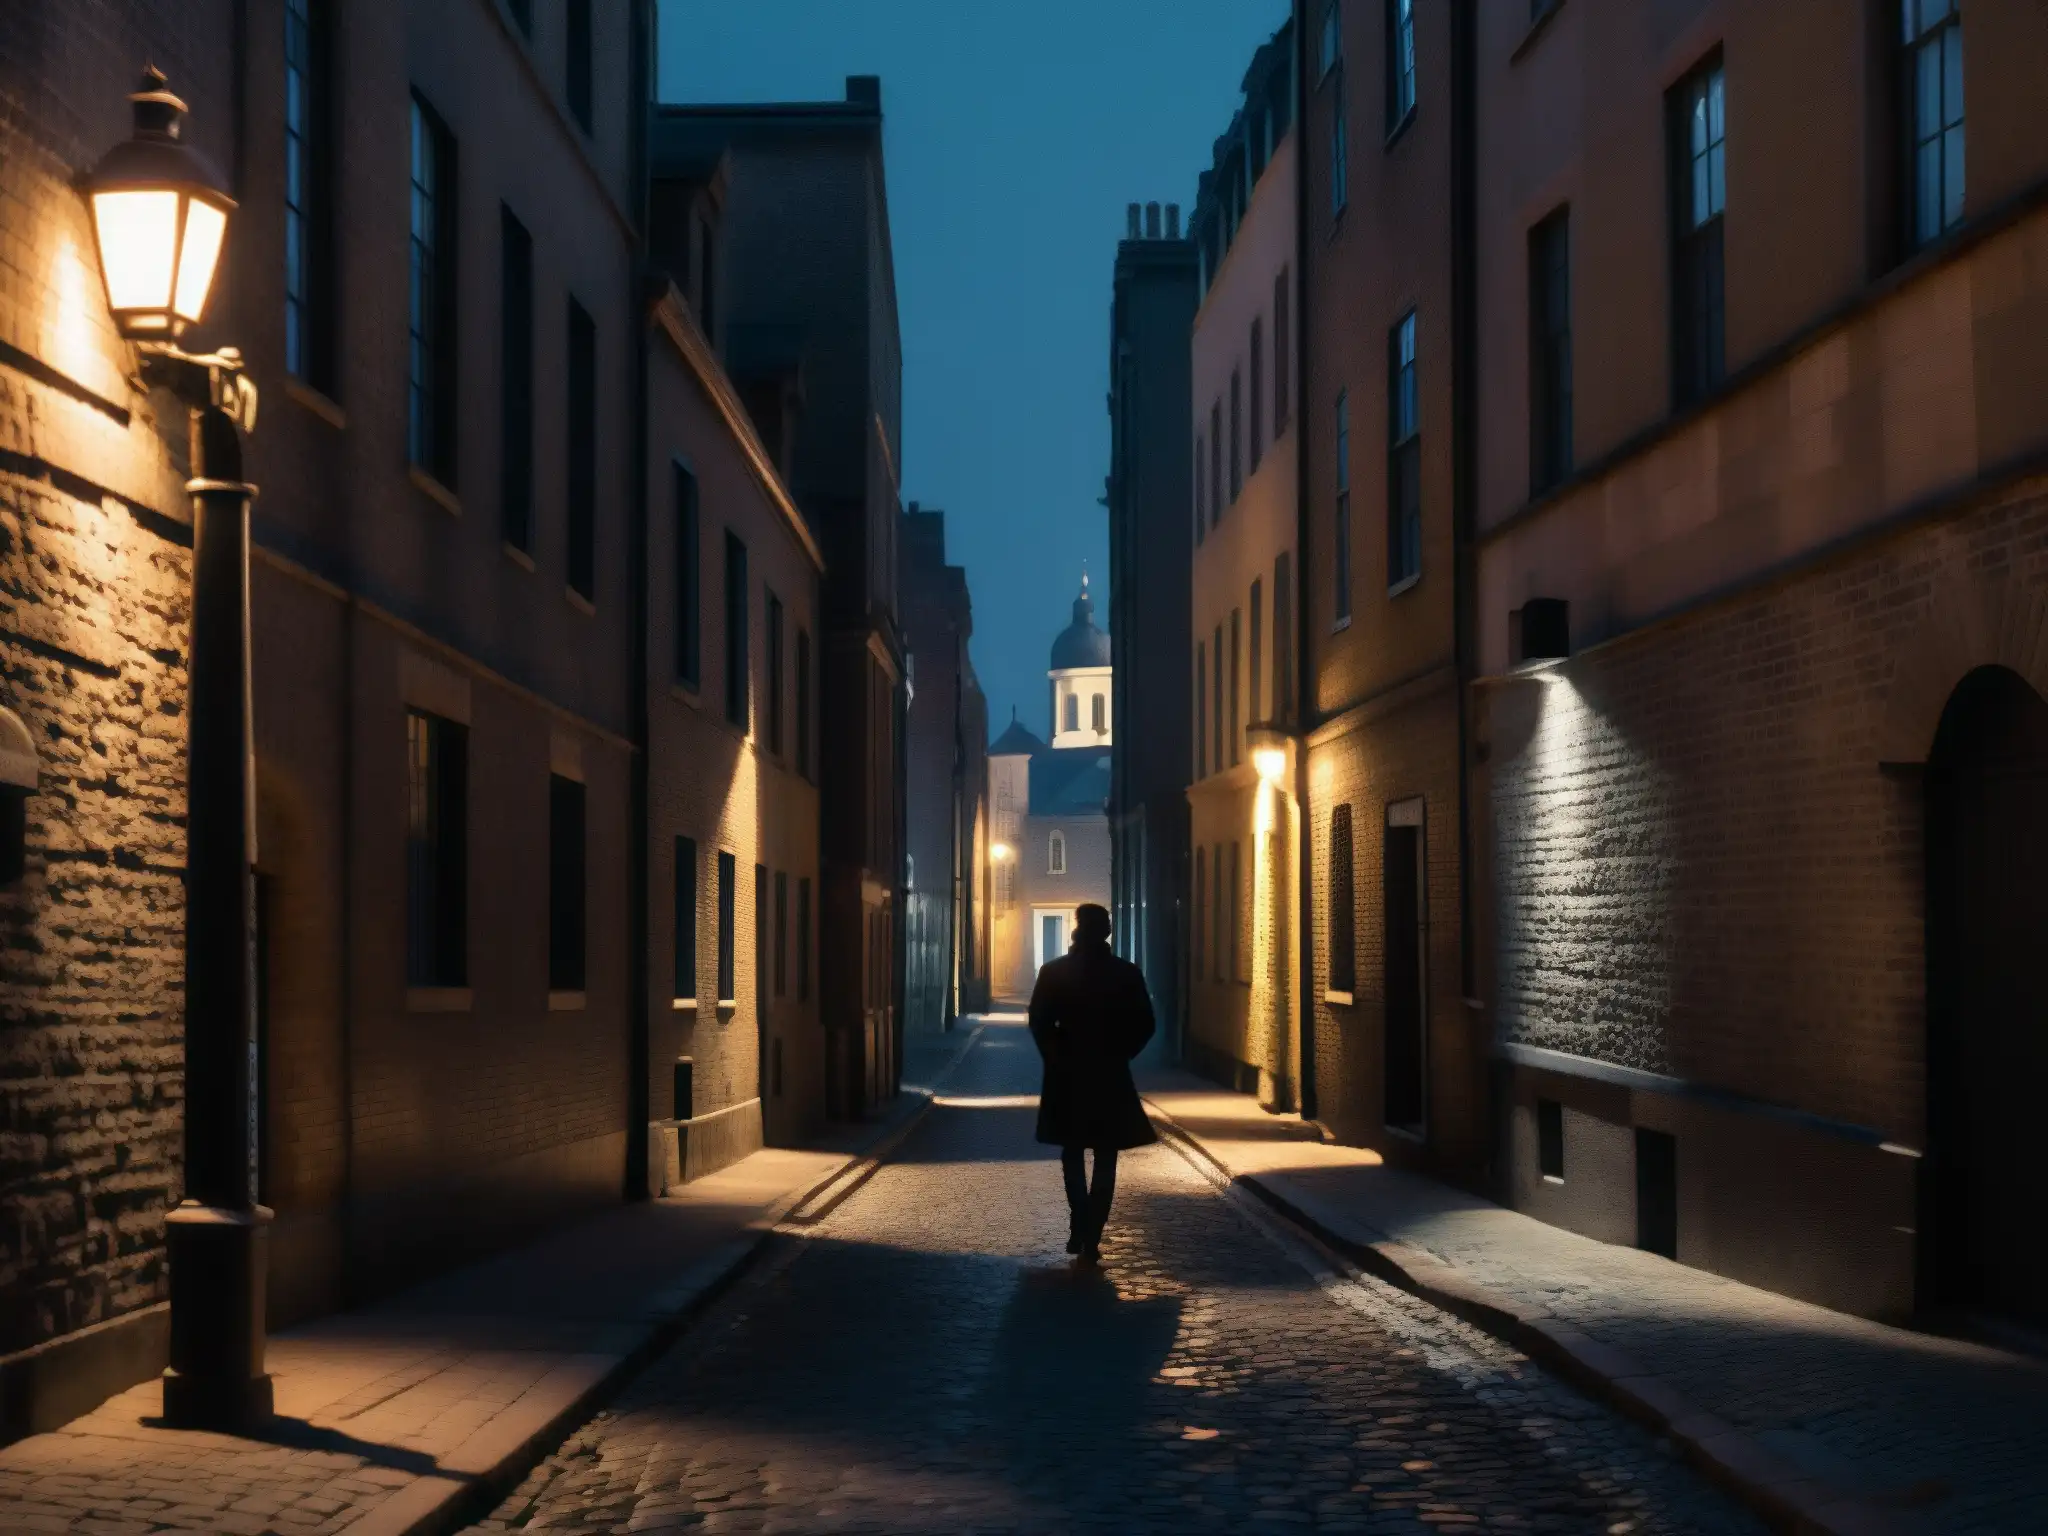 Un callejón urbano oscuro, con una figura solitaria caminando